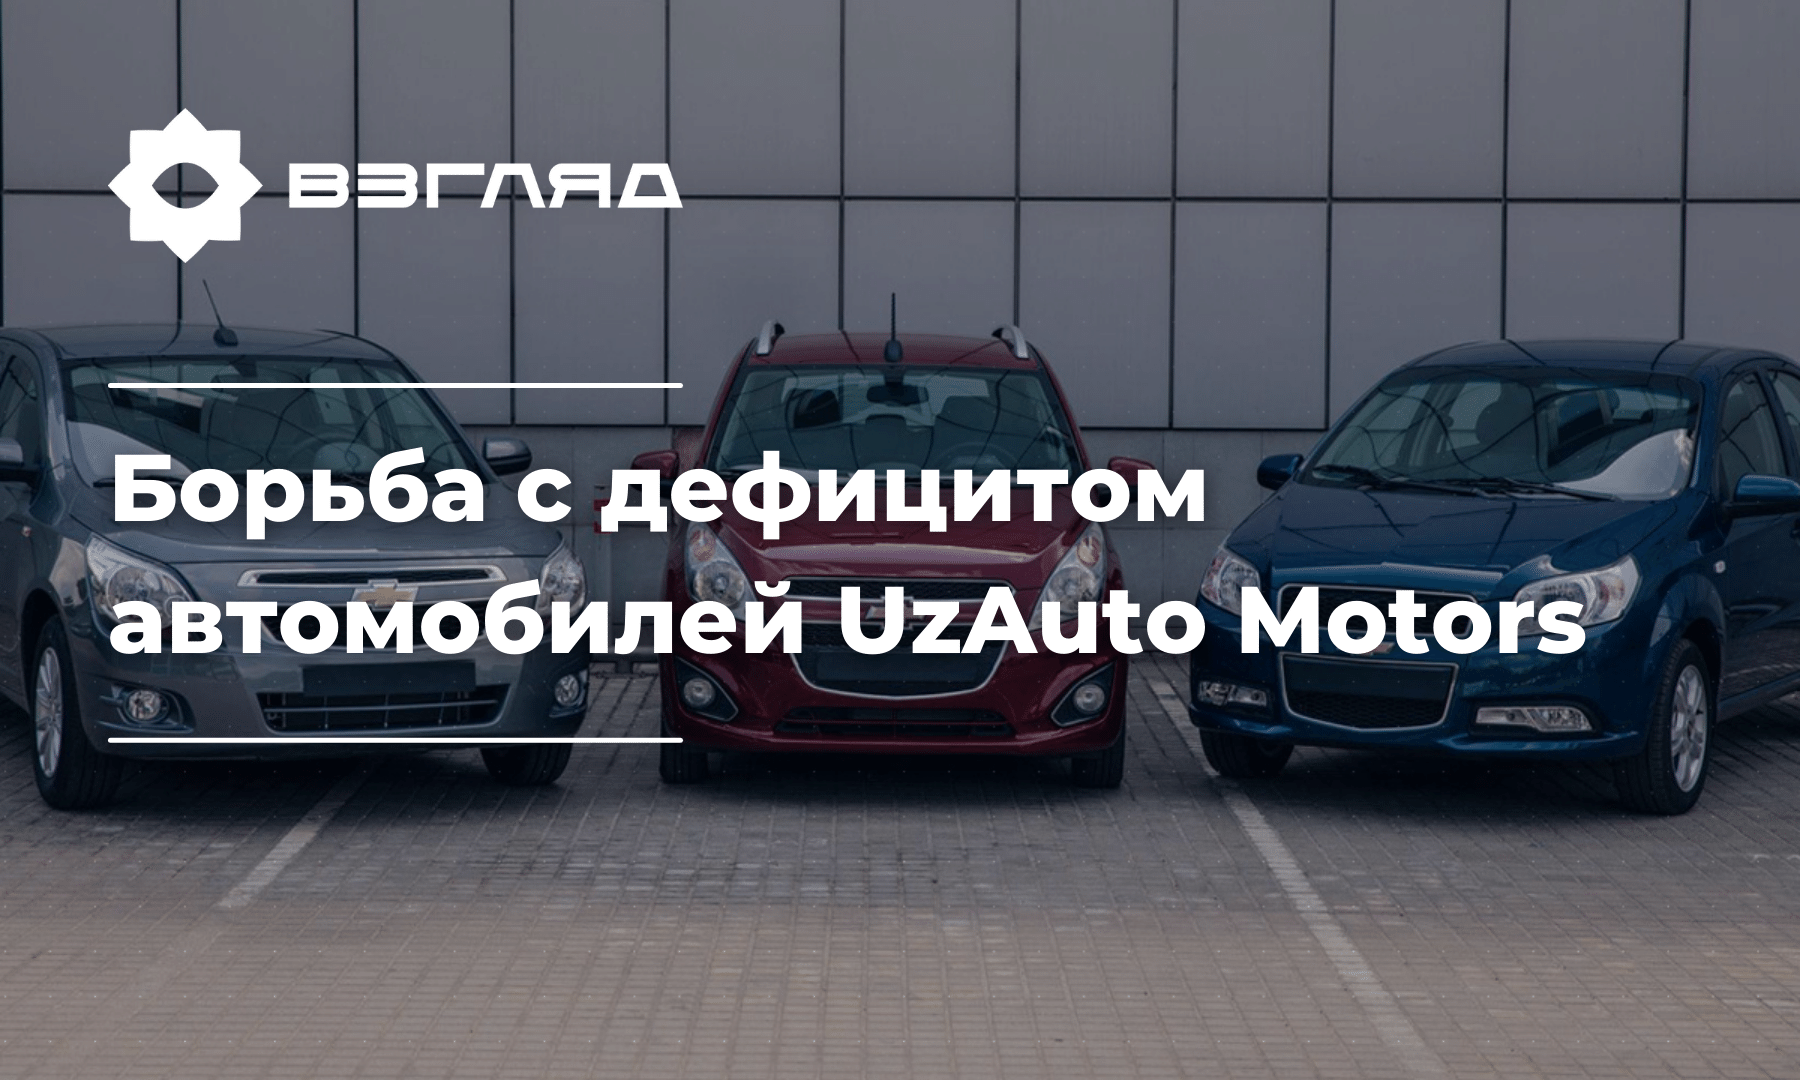 UzAuto Motors наращивает темпы выпуска автомобилей, стараясь покончить с дефицитом